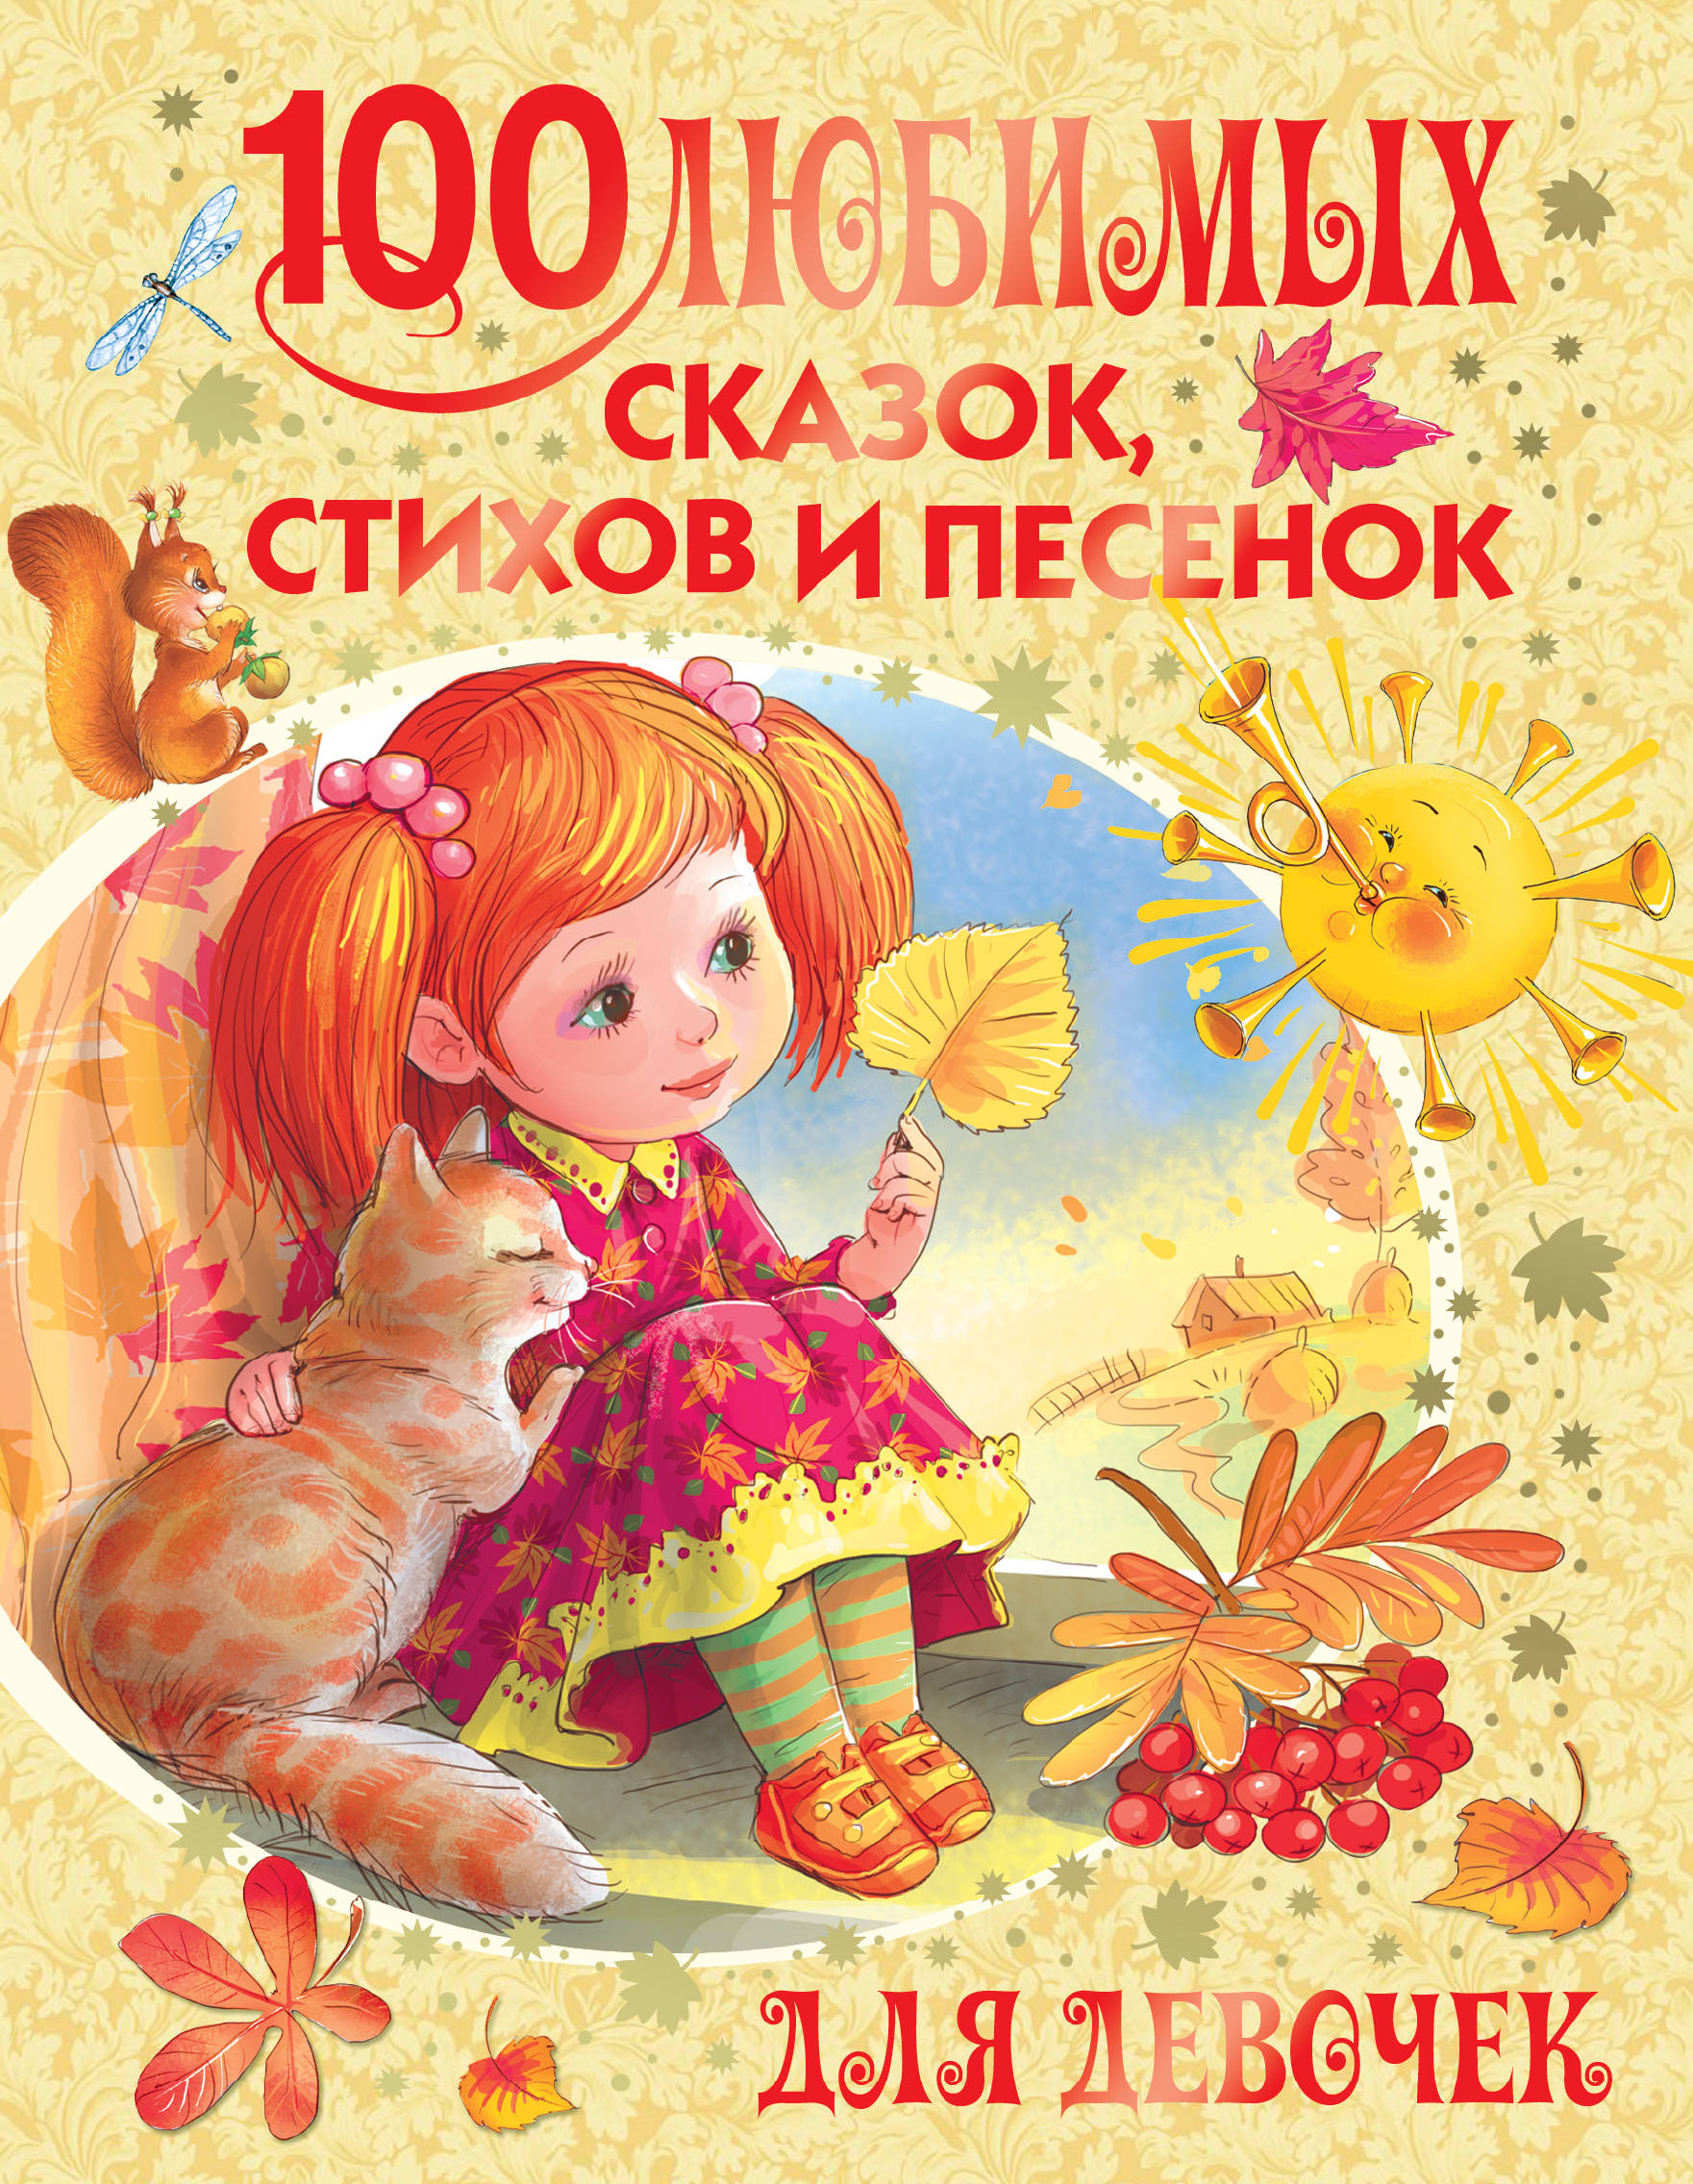 Барто Агния Львовна - 100 любимых сказок, стихов и песенок для девочек